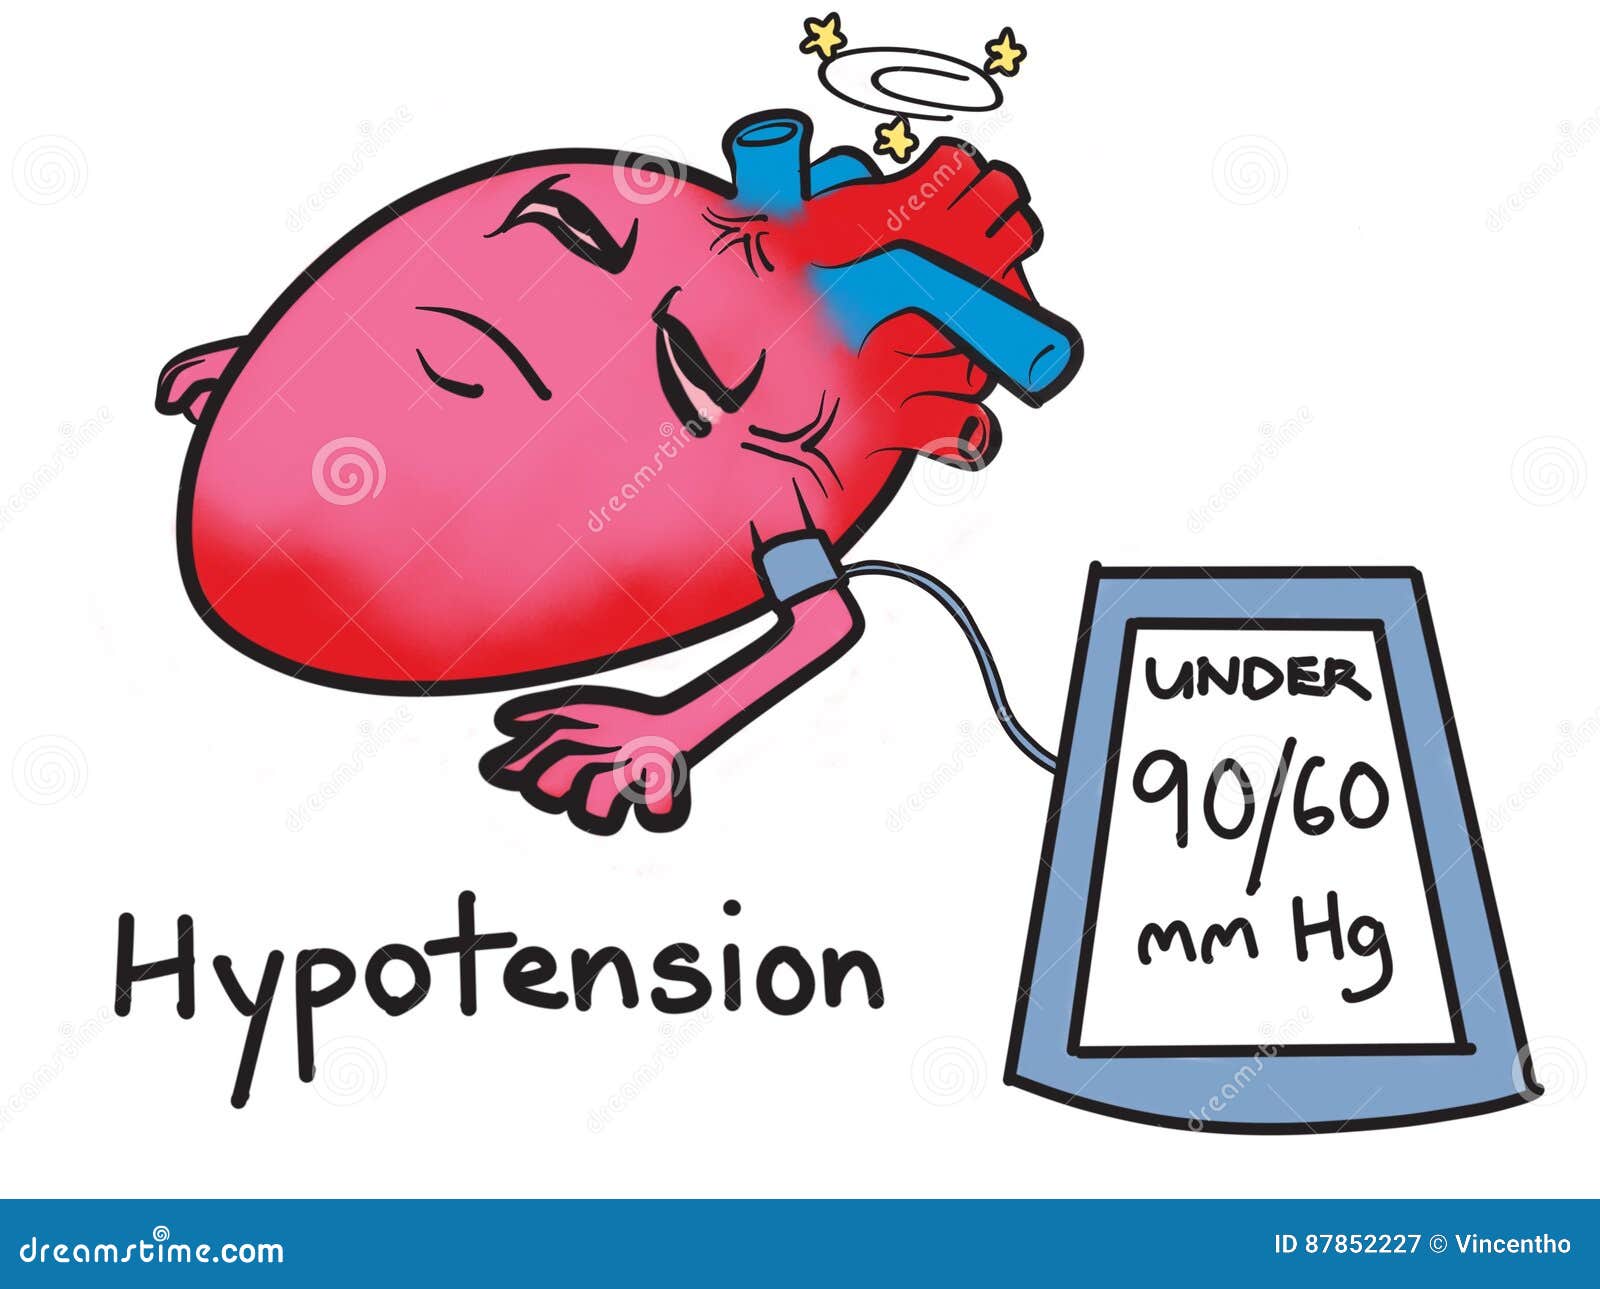 Kết quả hình ảnh cho hypotension